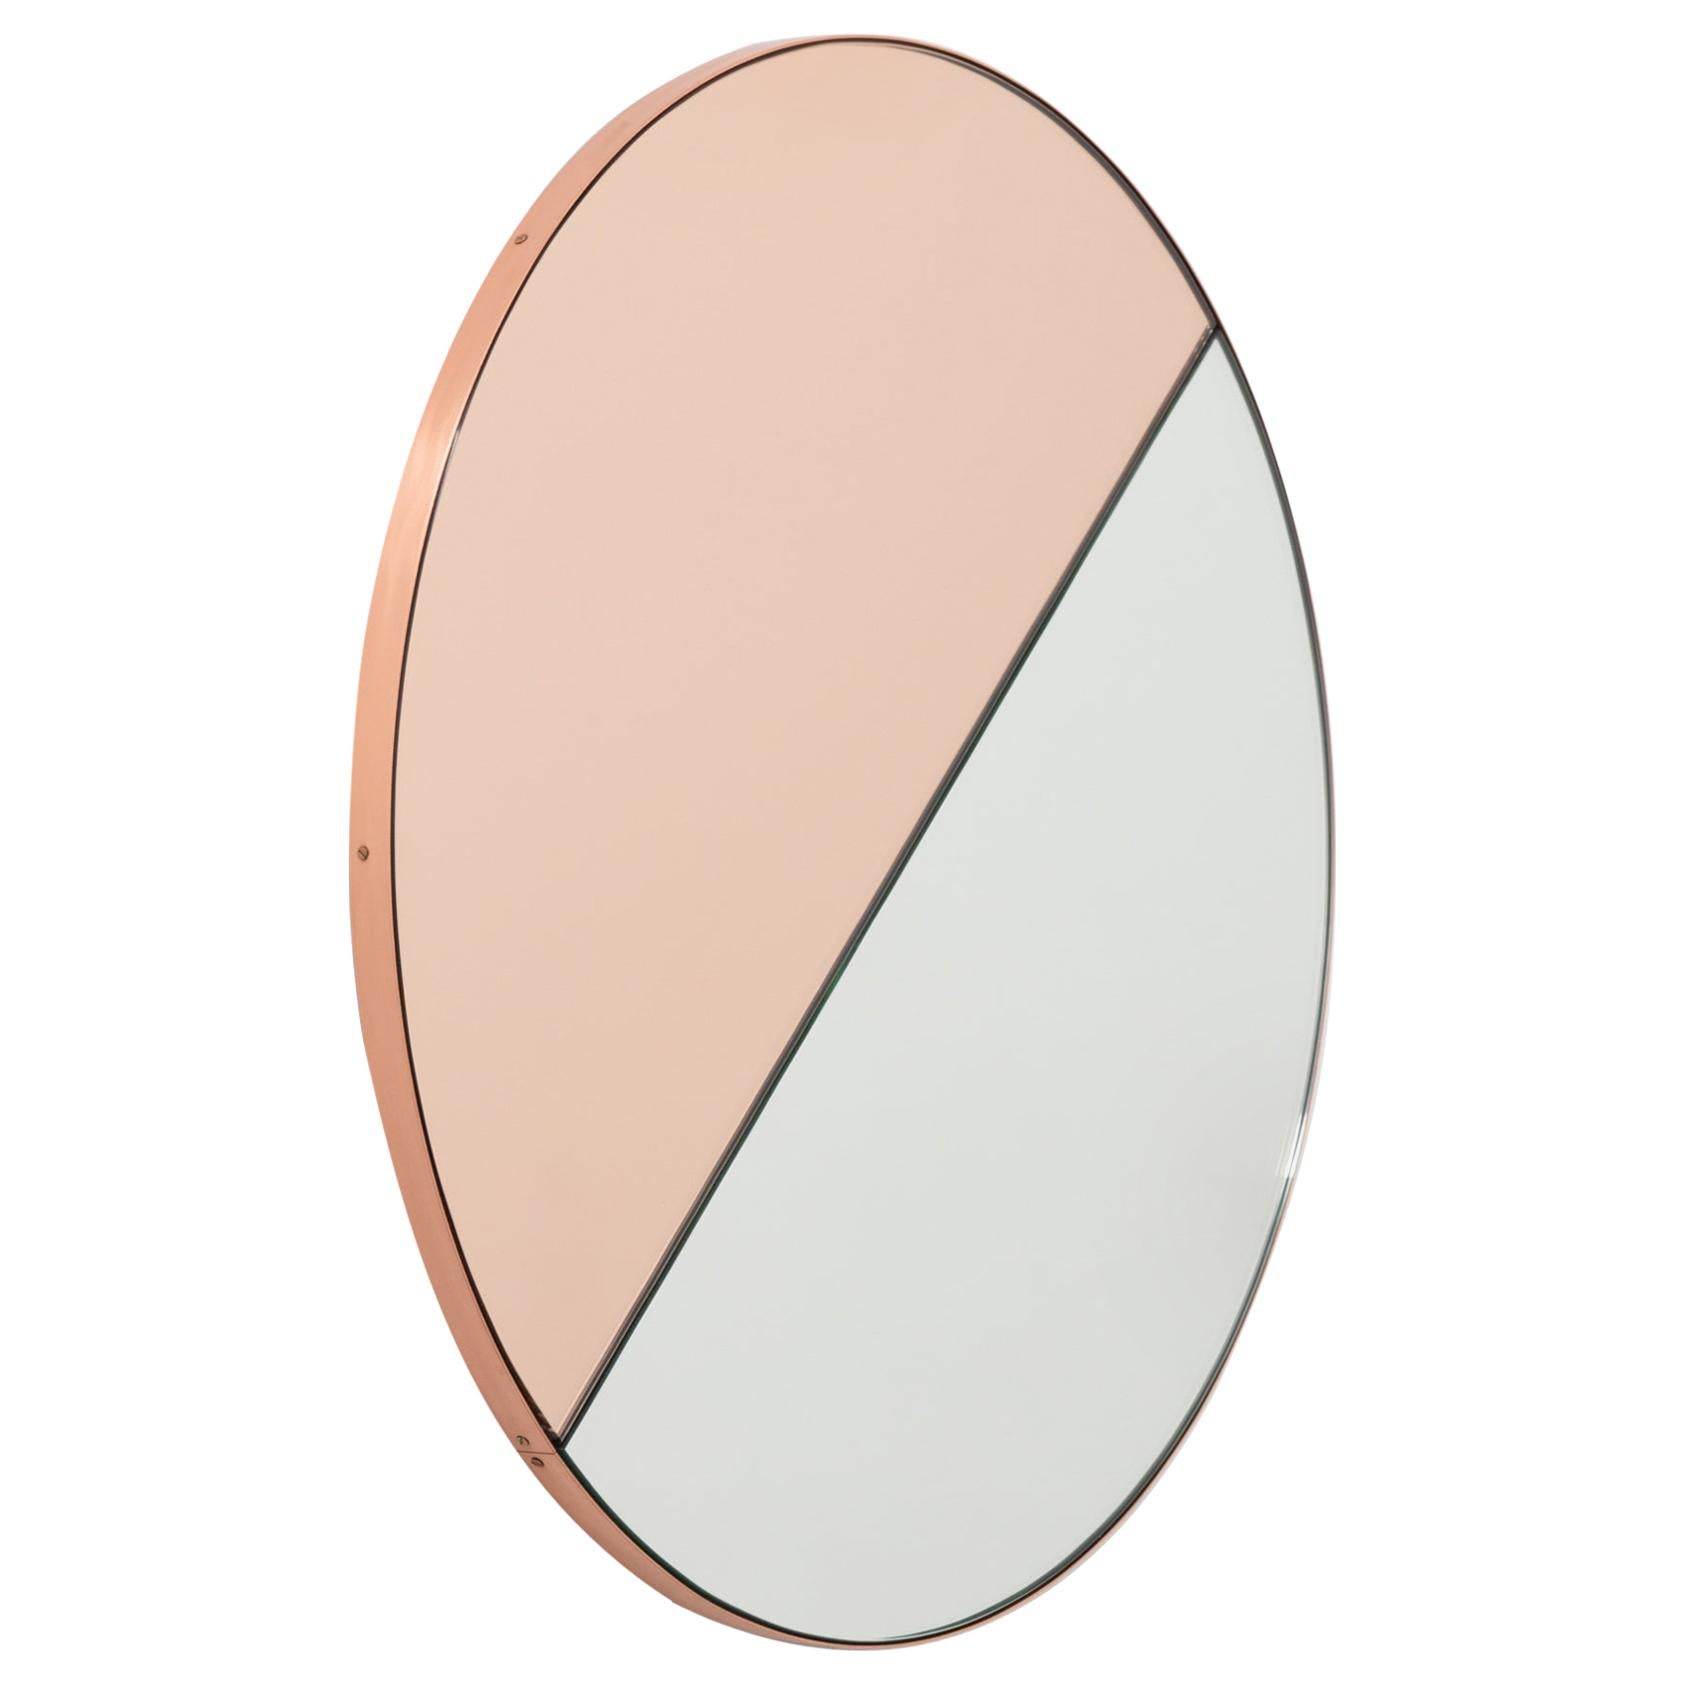 Miroir rond minimaliste Orbis Dualis teinté or rose mélangé, cadre en cuivre, régulier